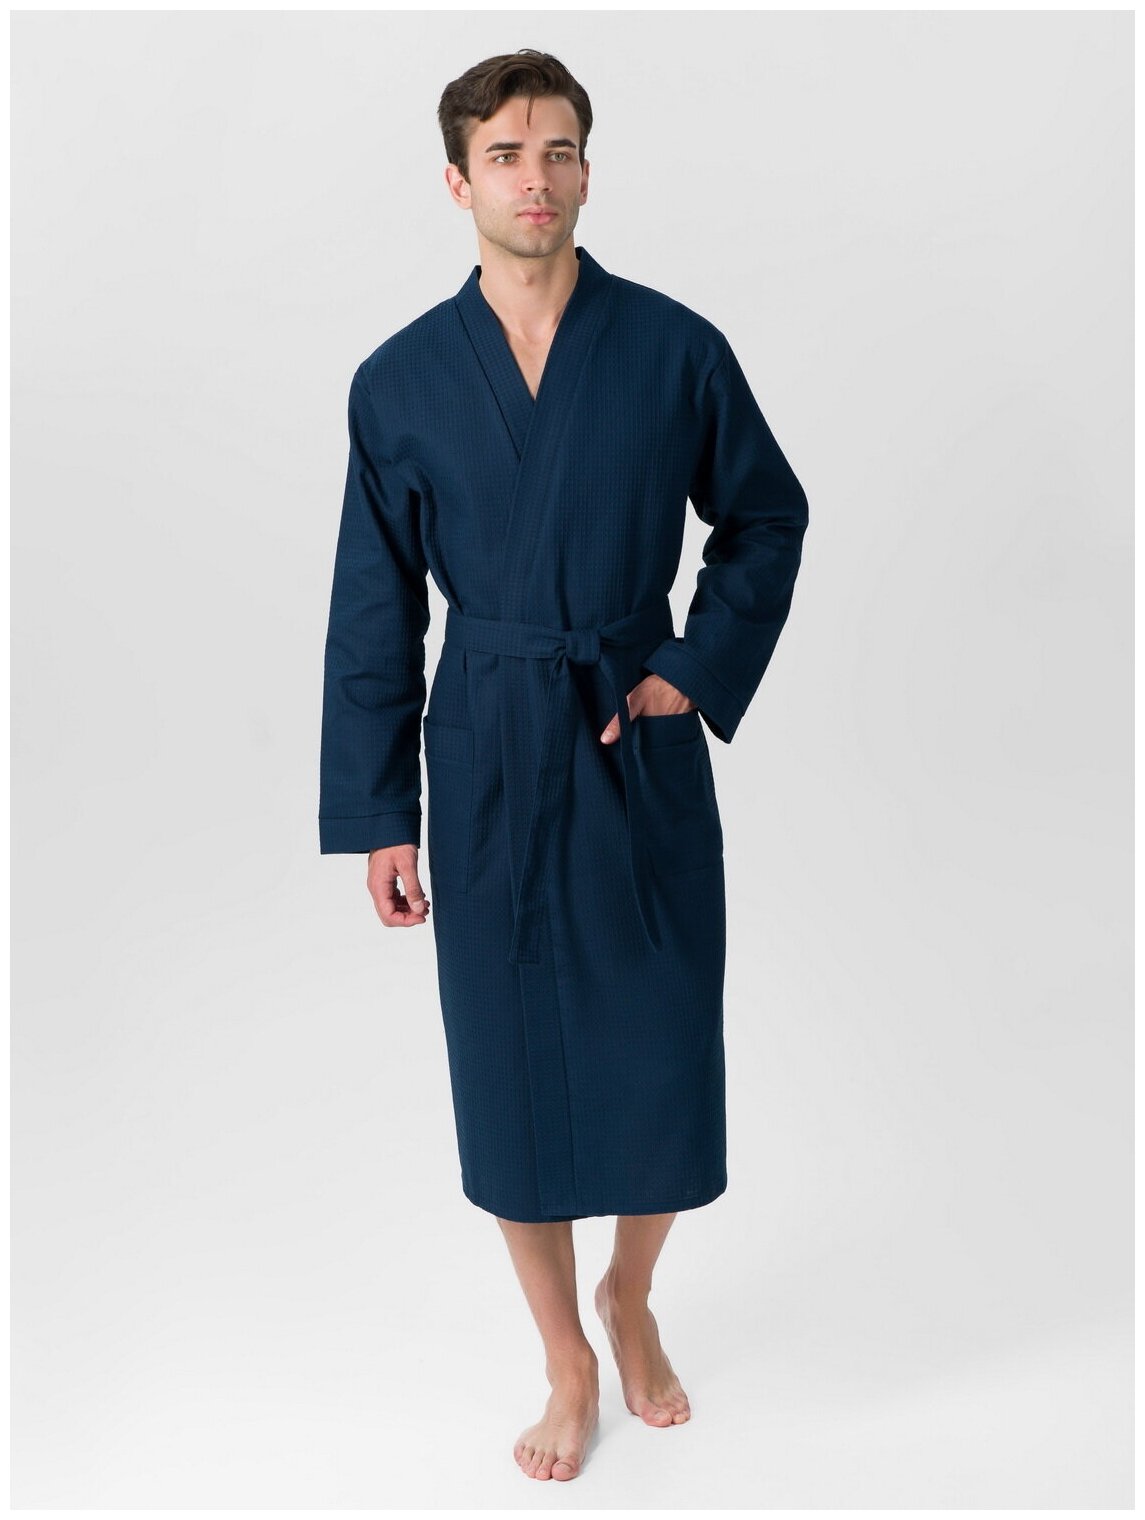 Мужской вафельный халат с планкой, темно-синий. Размер: 54-56